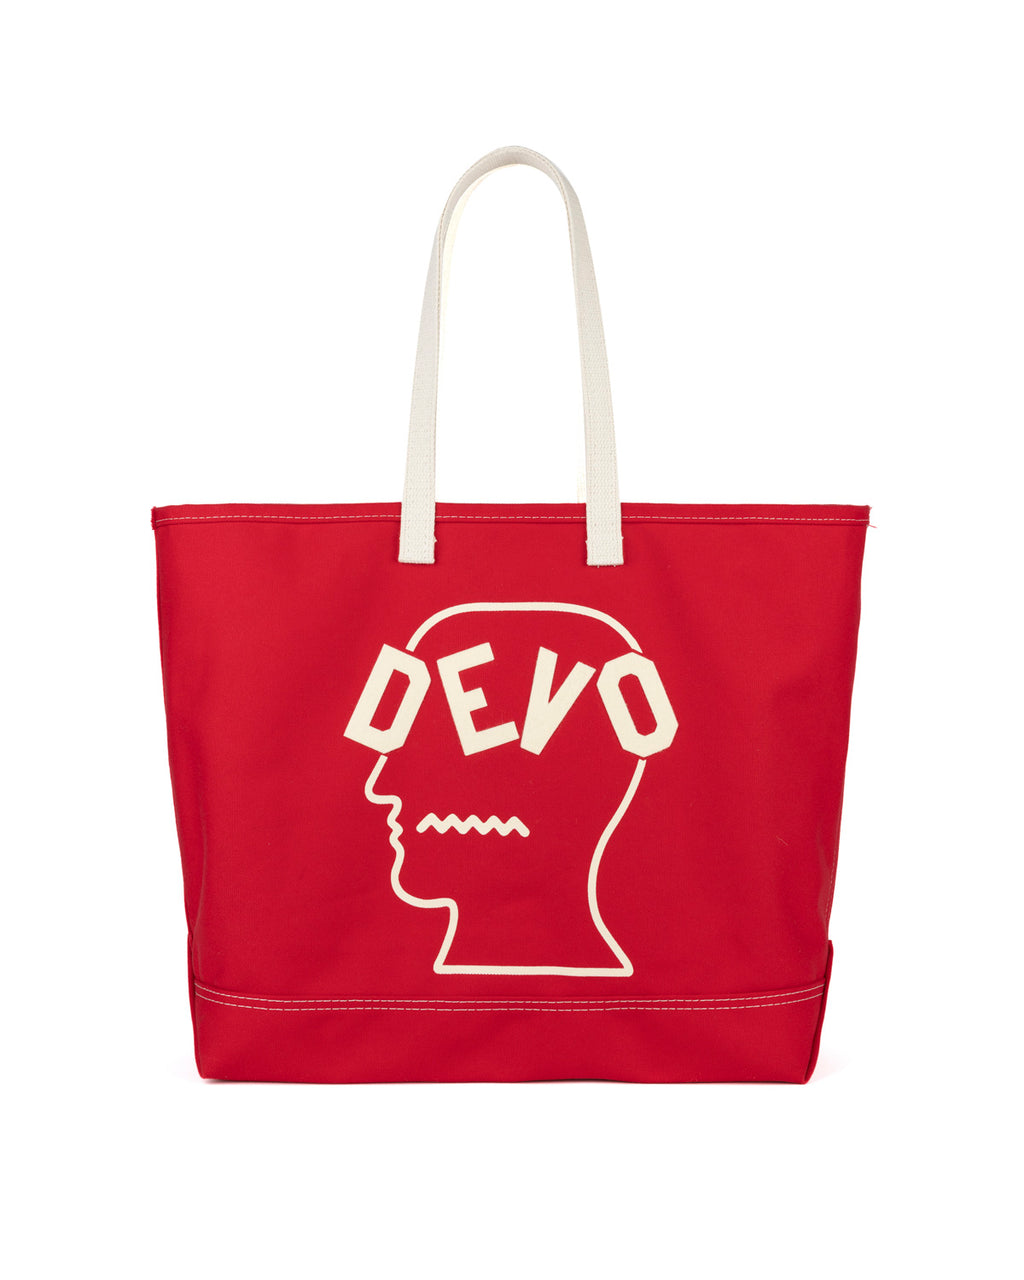 Brain Dead x Devo Tote Bag - Red